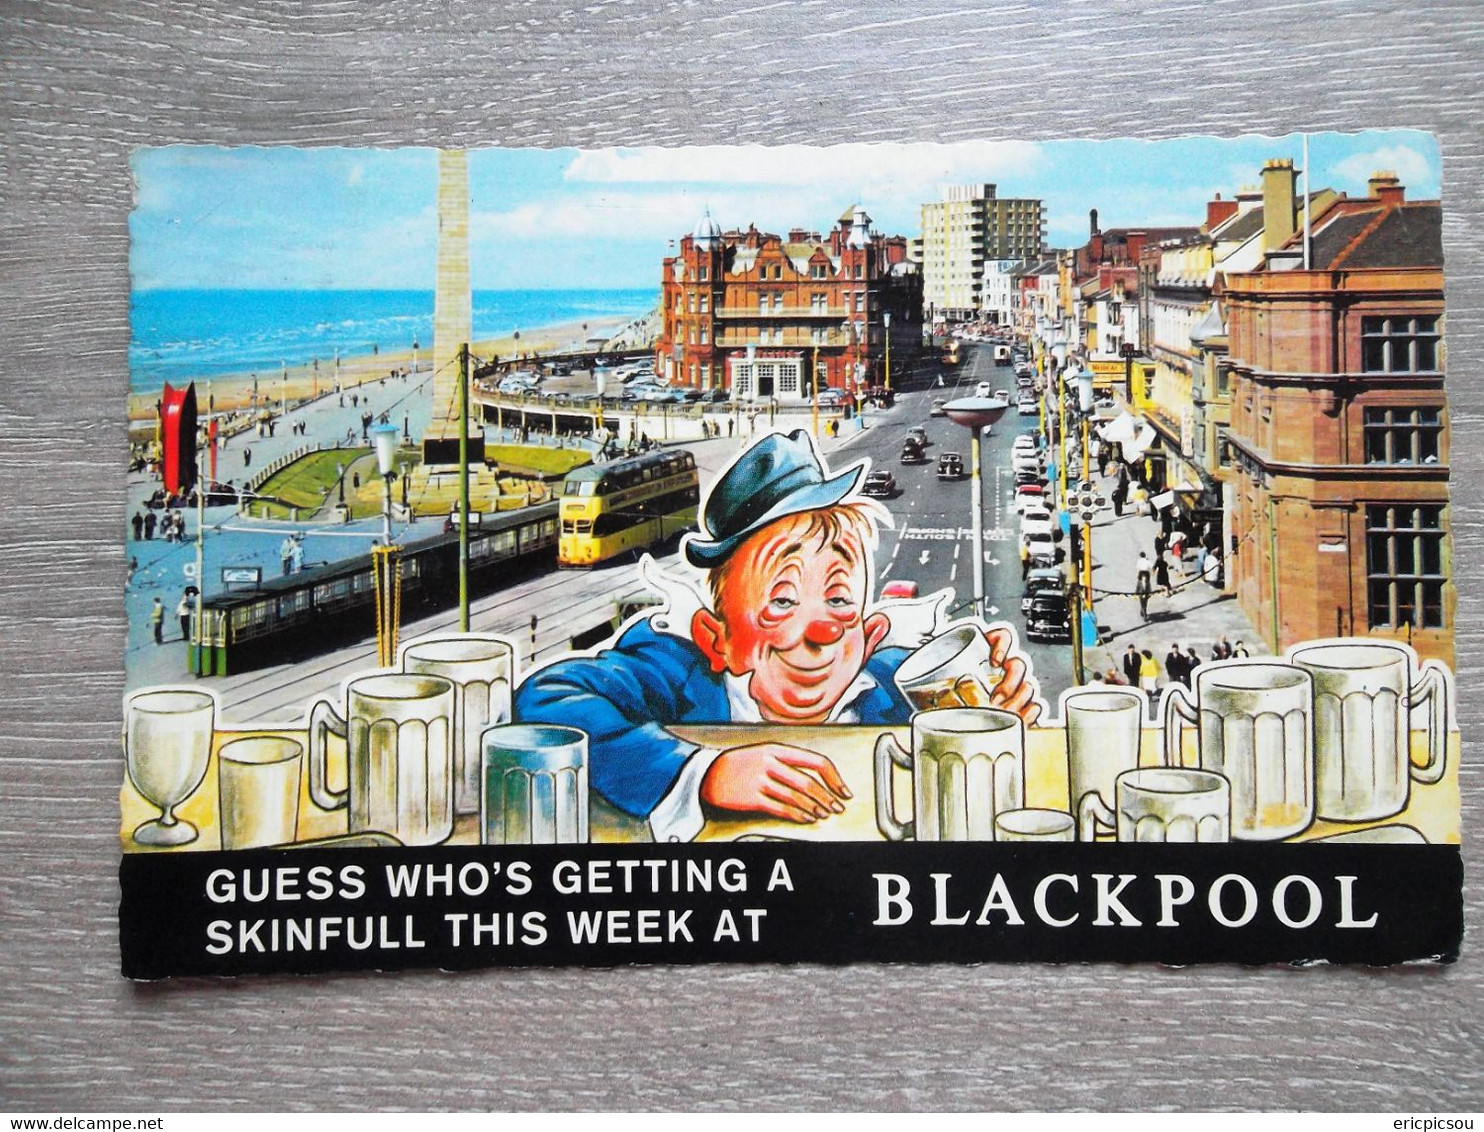 Blackpool Fylde Coast Lancs " 1967 - Blackpool